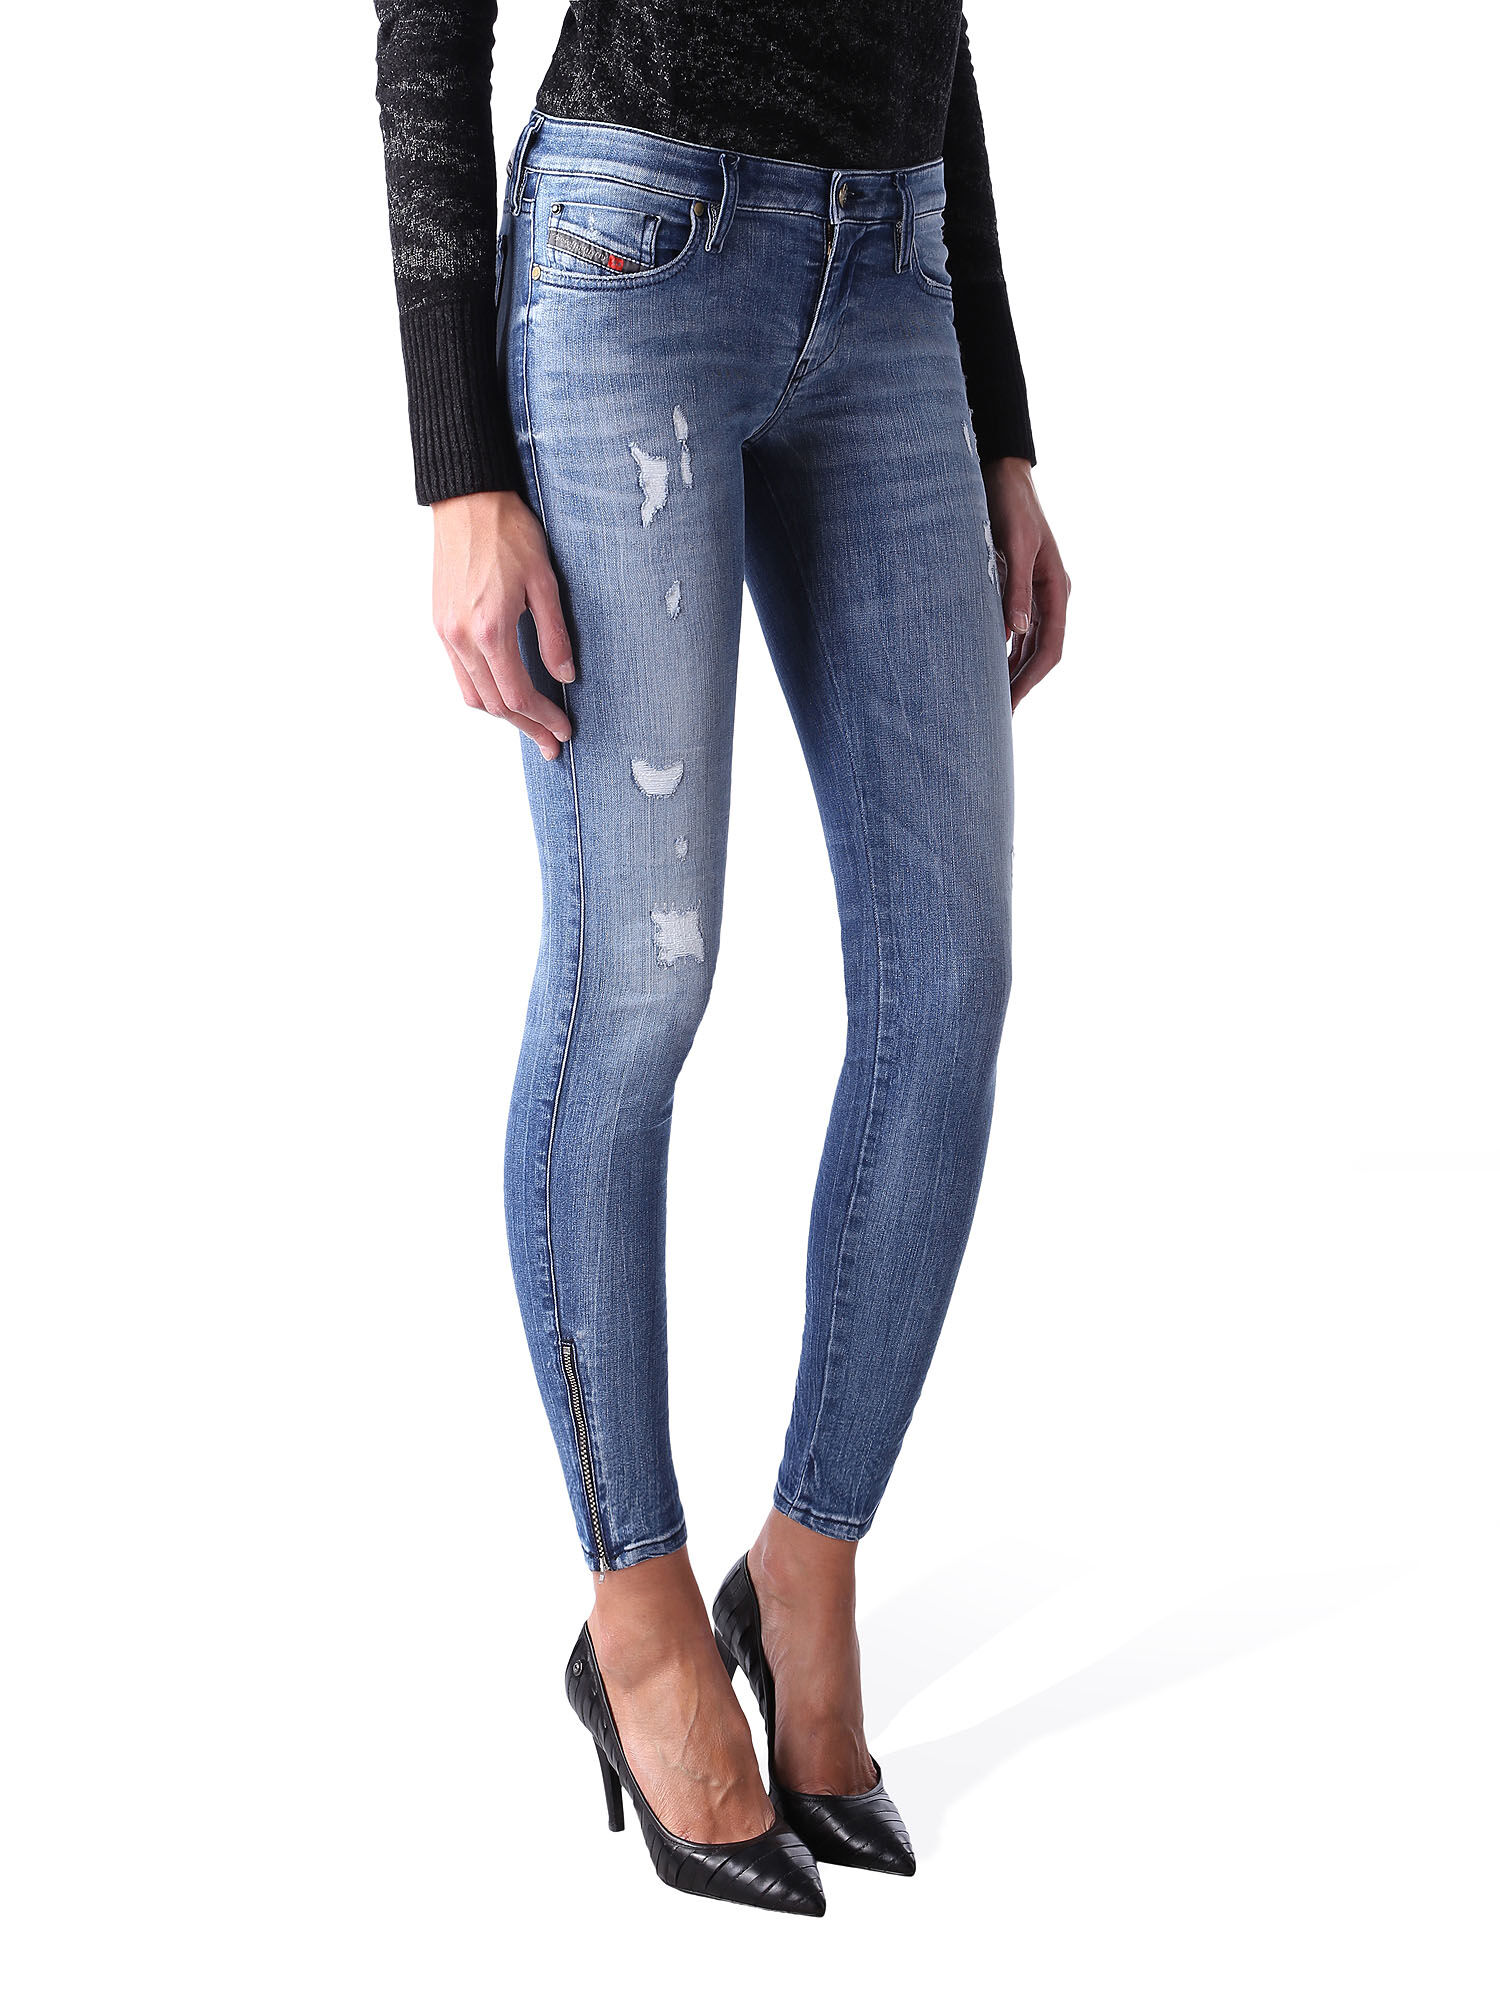 SKINZEE-LOW-ZIP 0847U Jeans Woman | Diesel Online